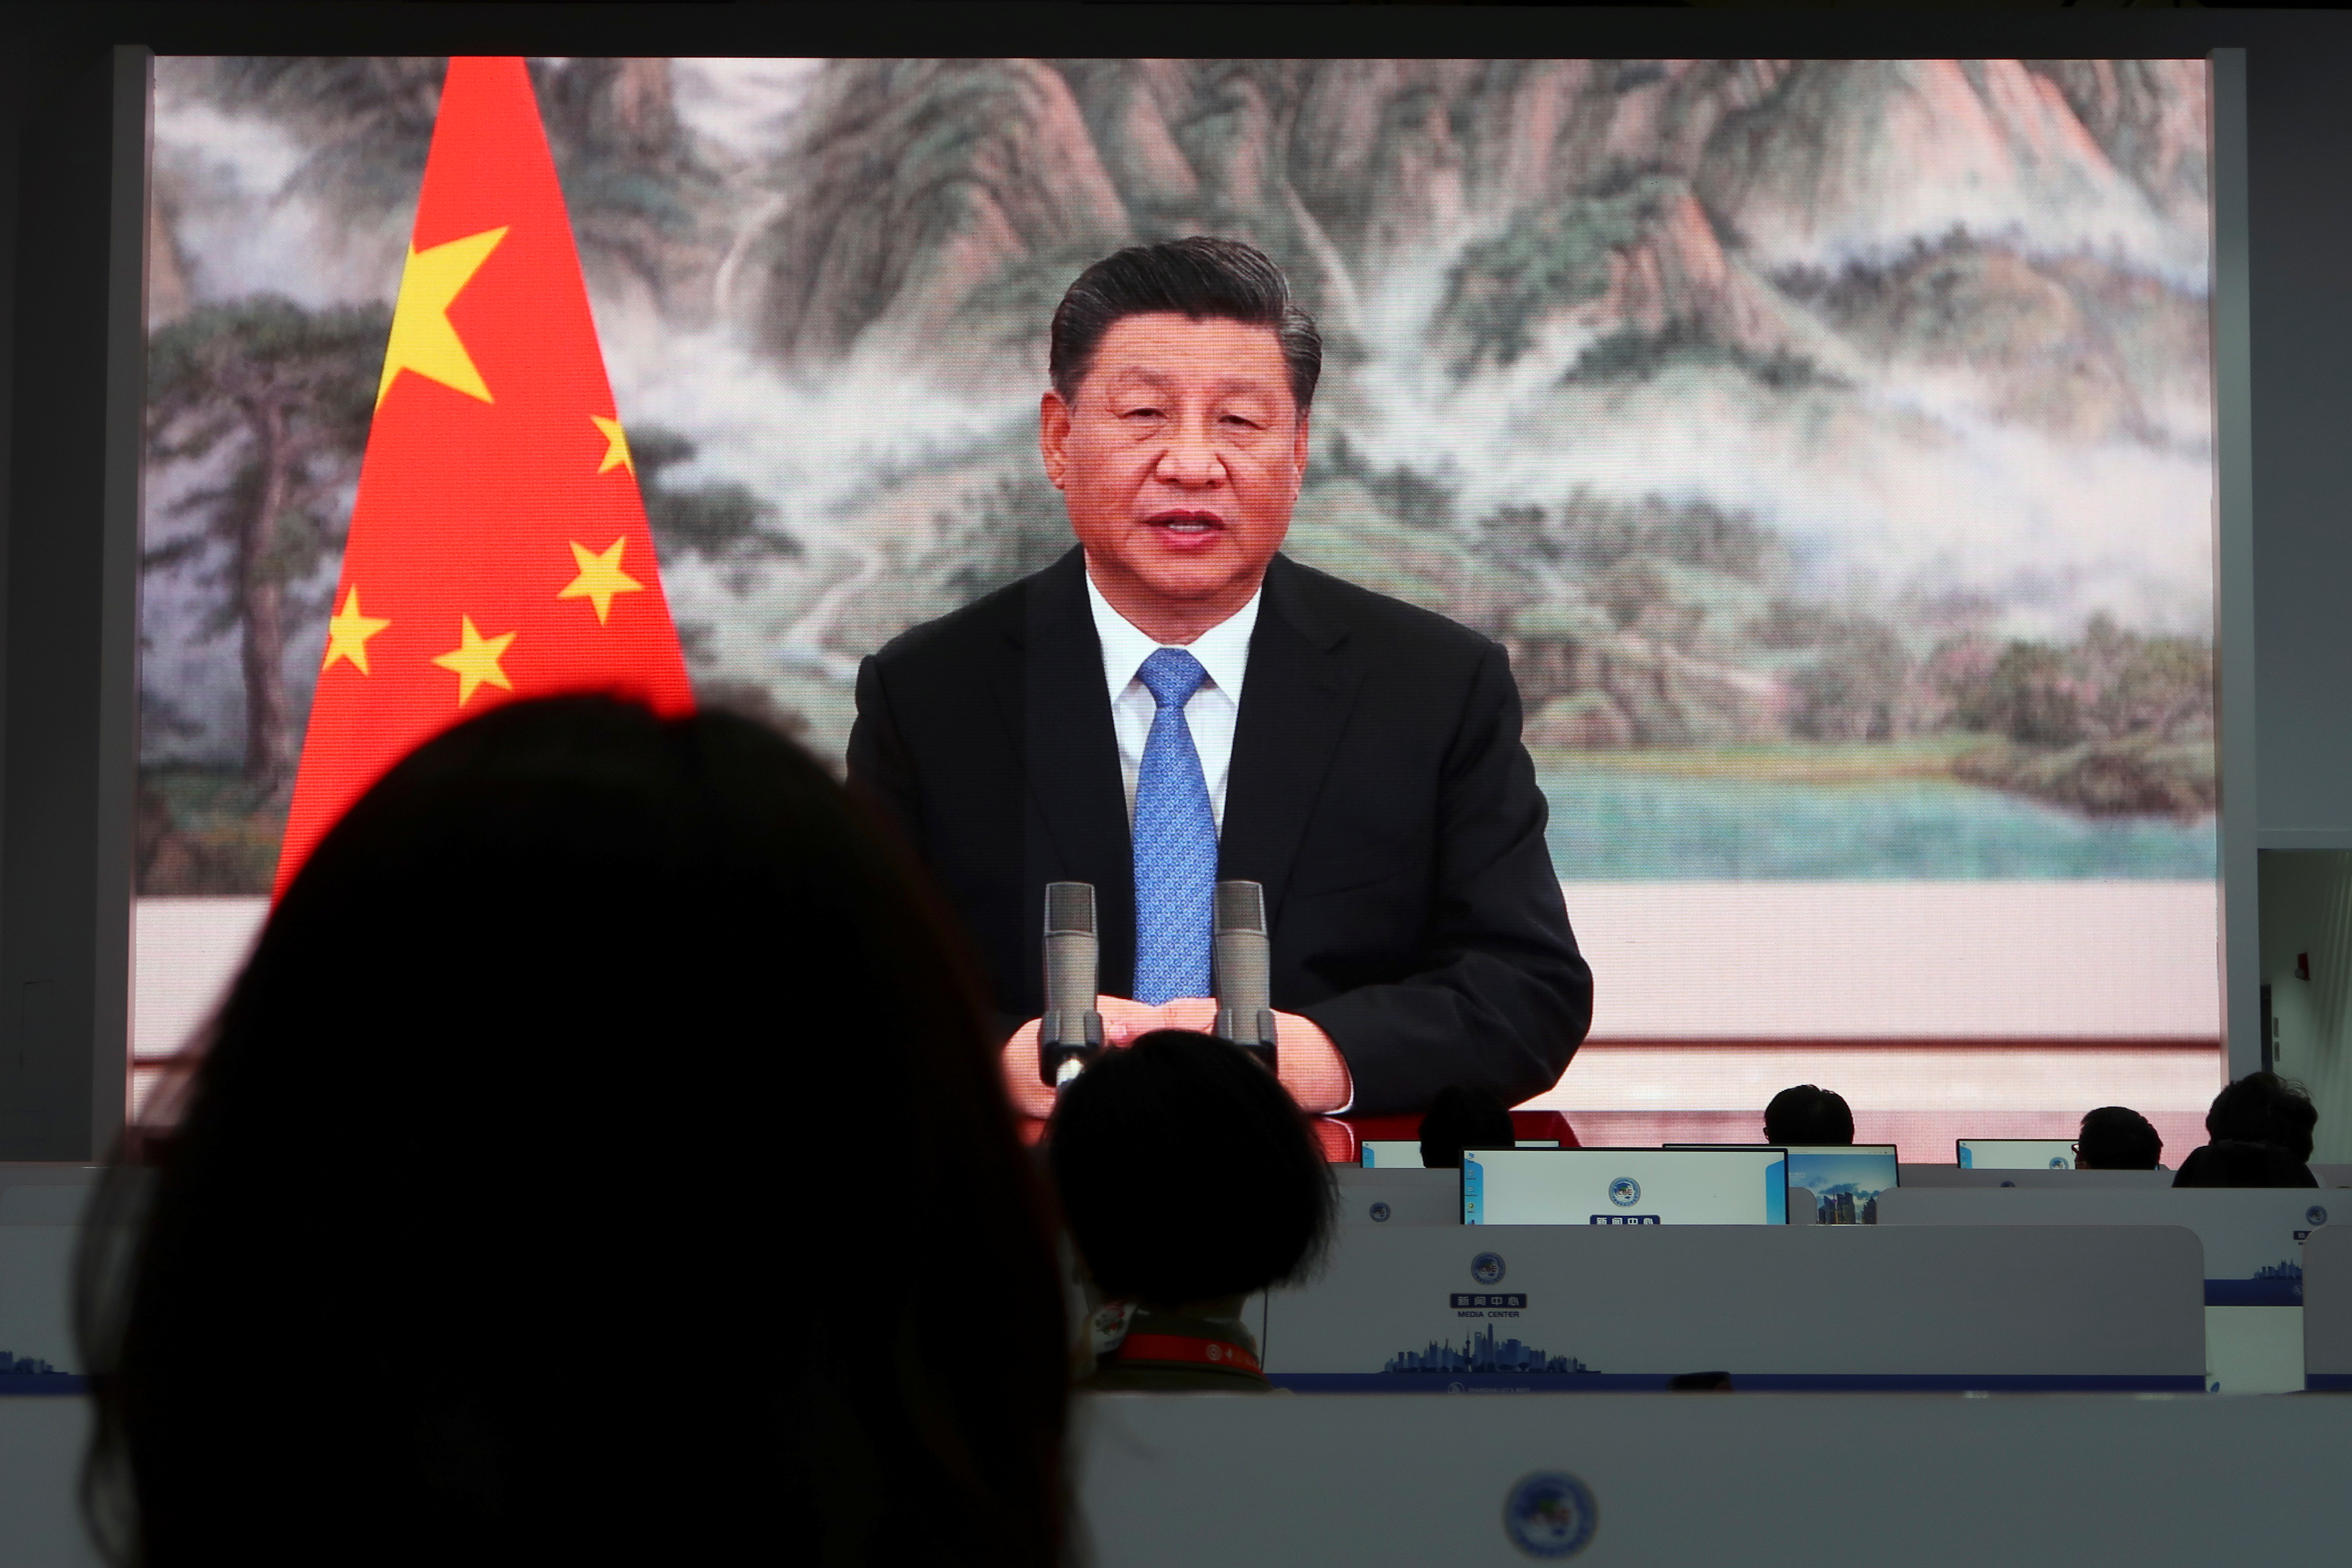 La Cámara Europea en China critica la próxima feria de Shanghai y la califica de “espectáculo político”.